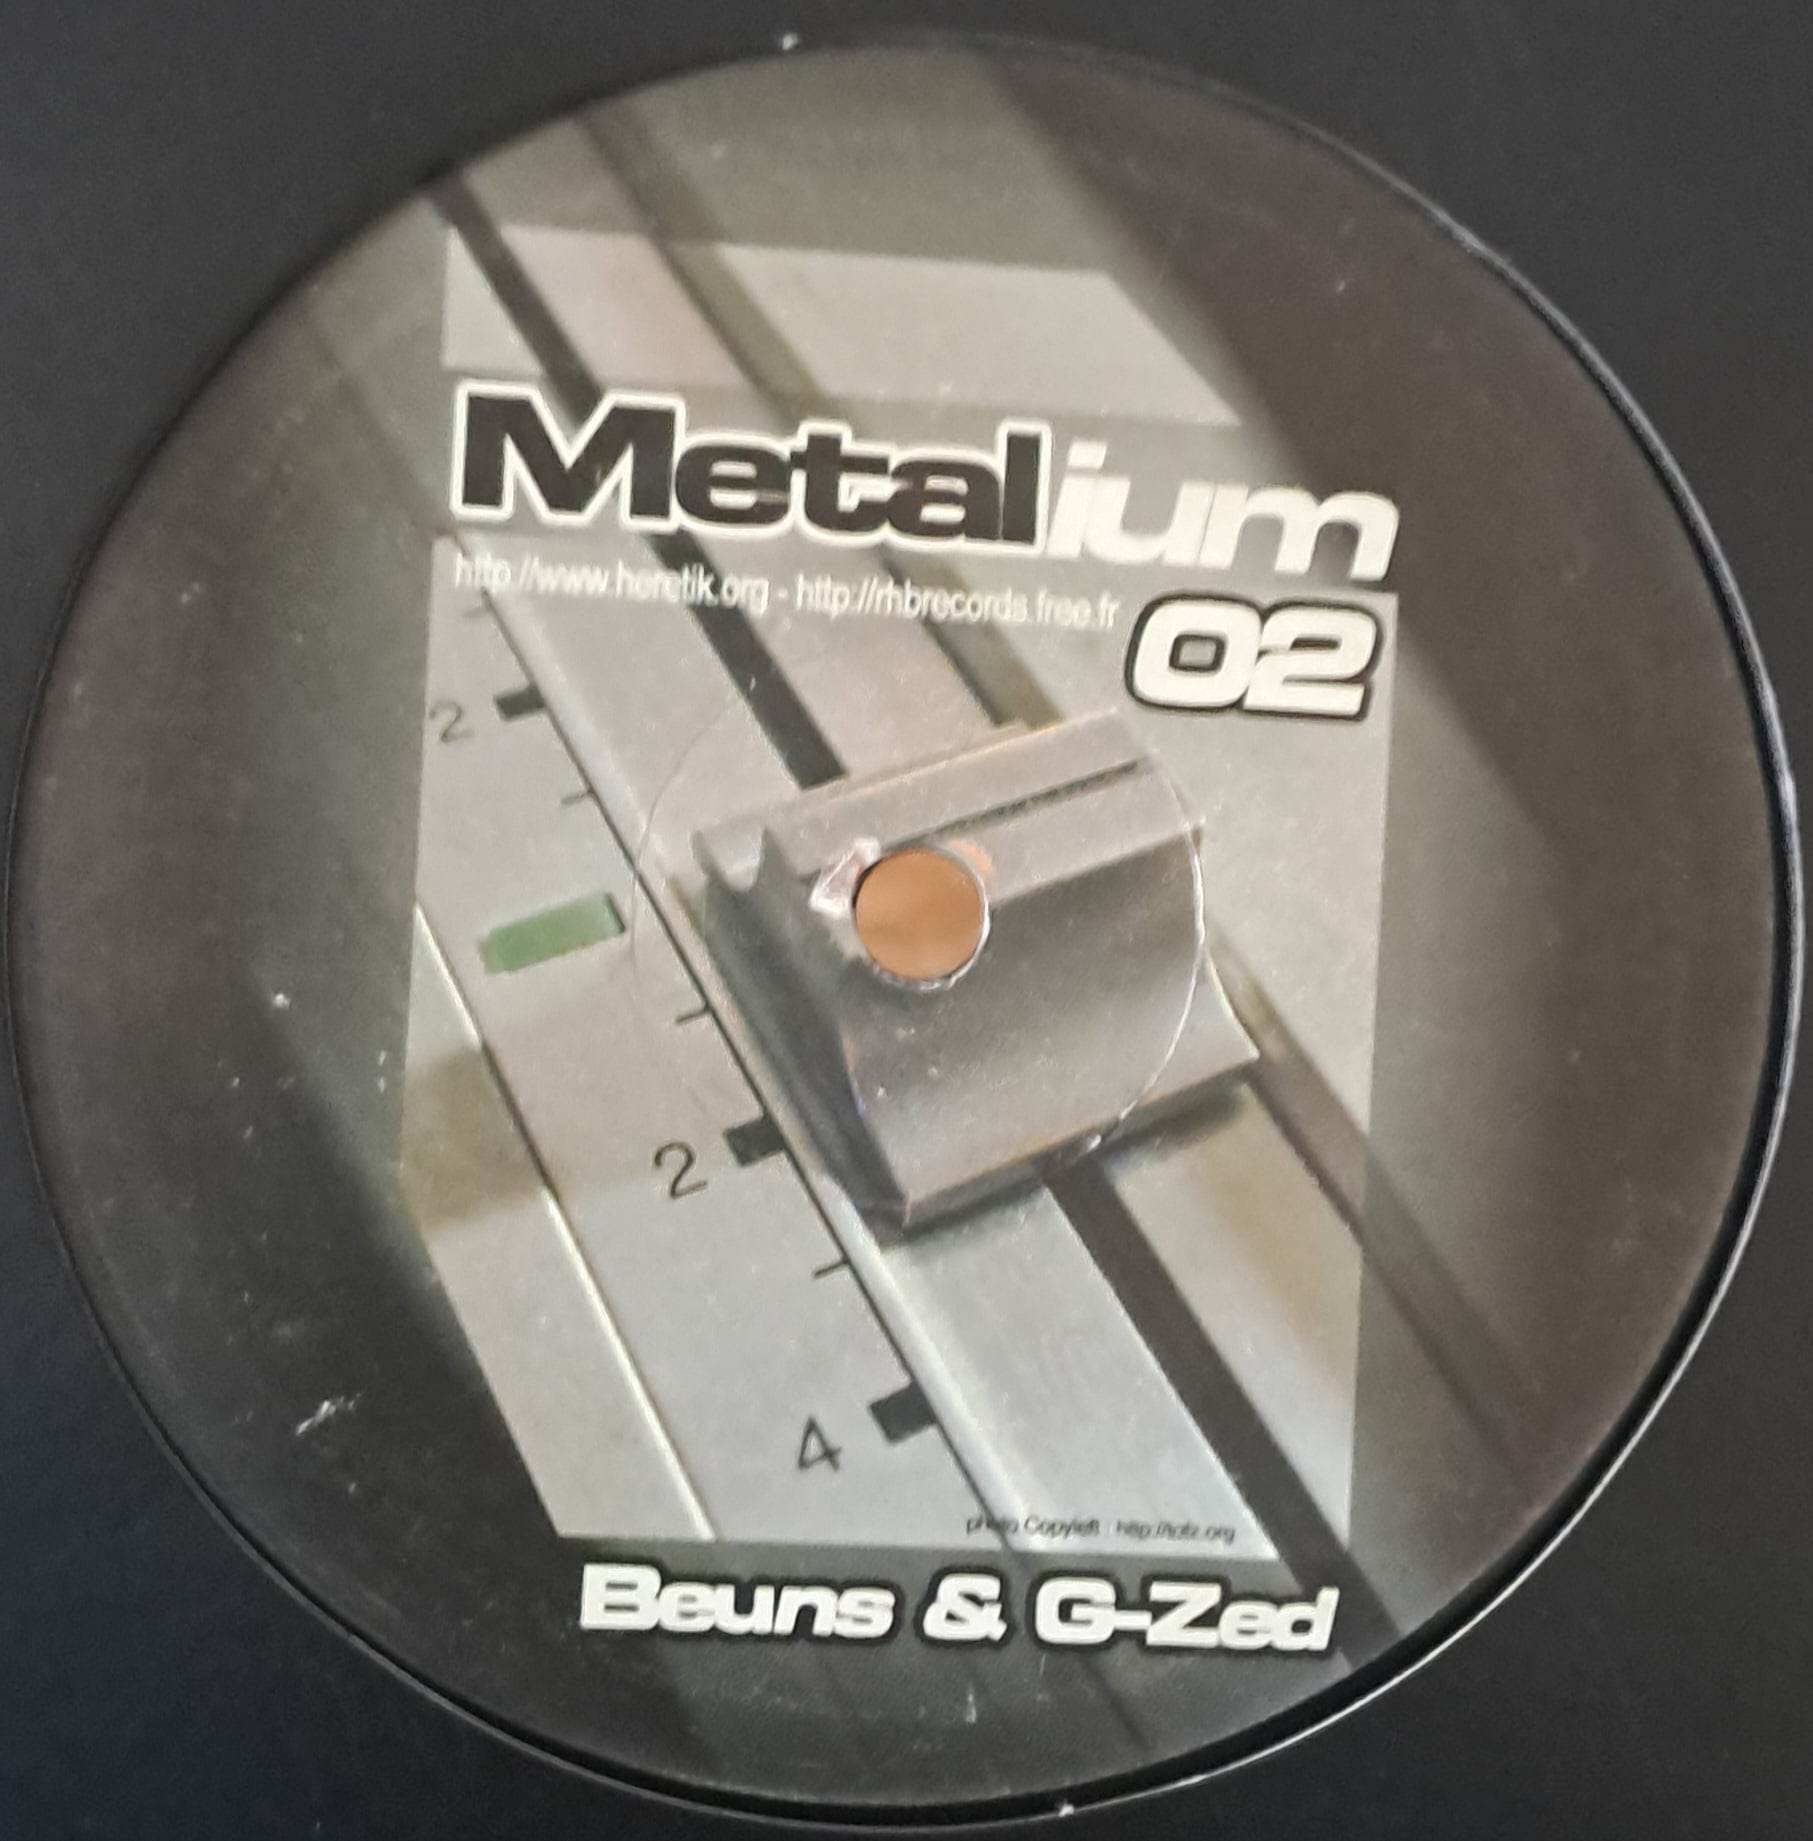 Metalium 02 - vinyle freetekno